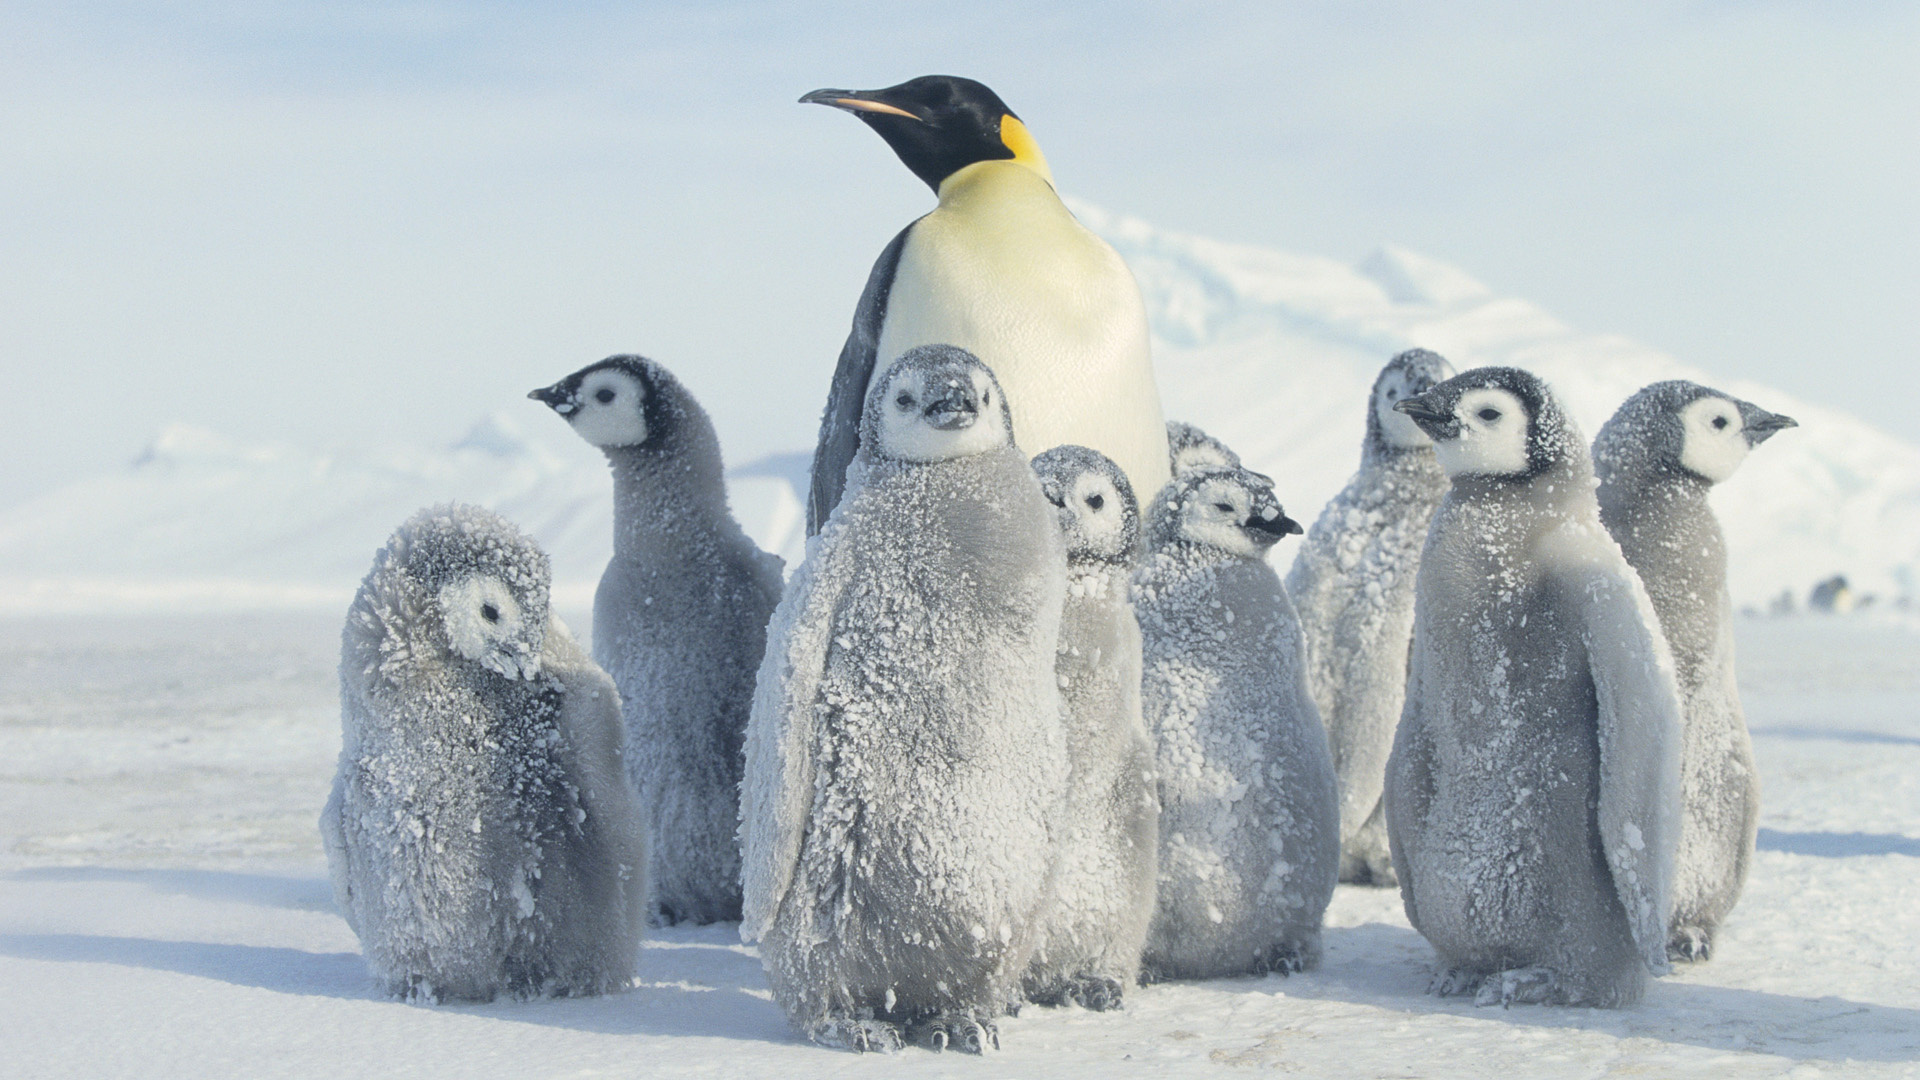 Wallpaper winter snow penguin antarctica desktop